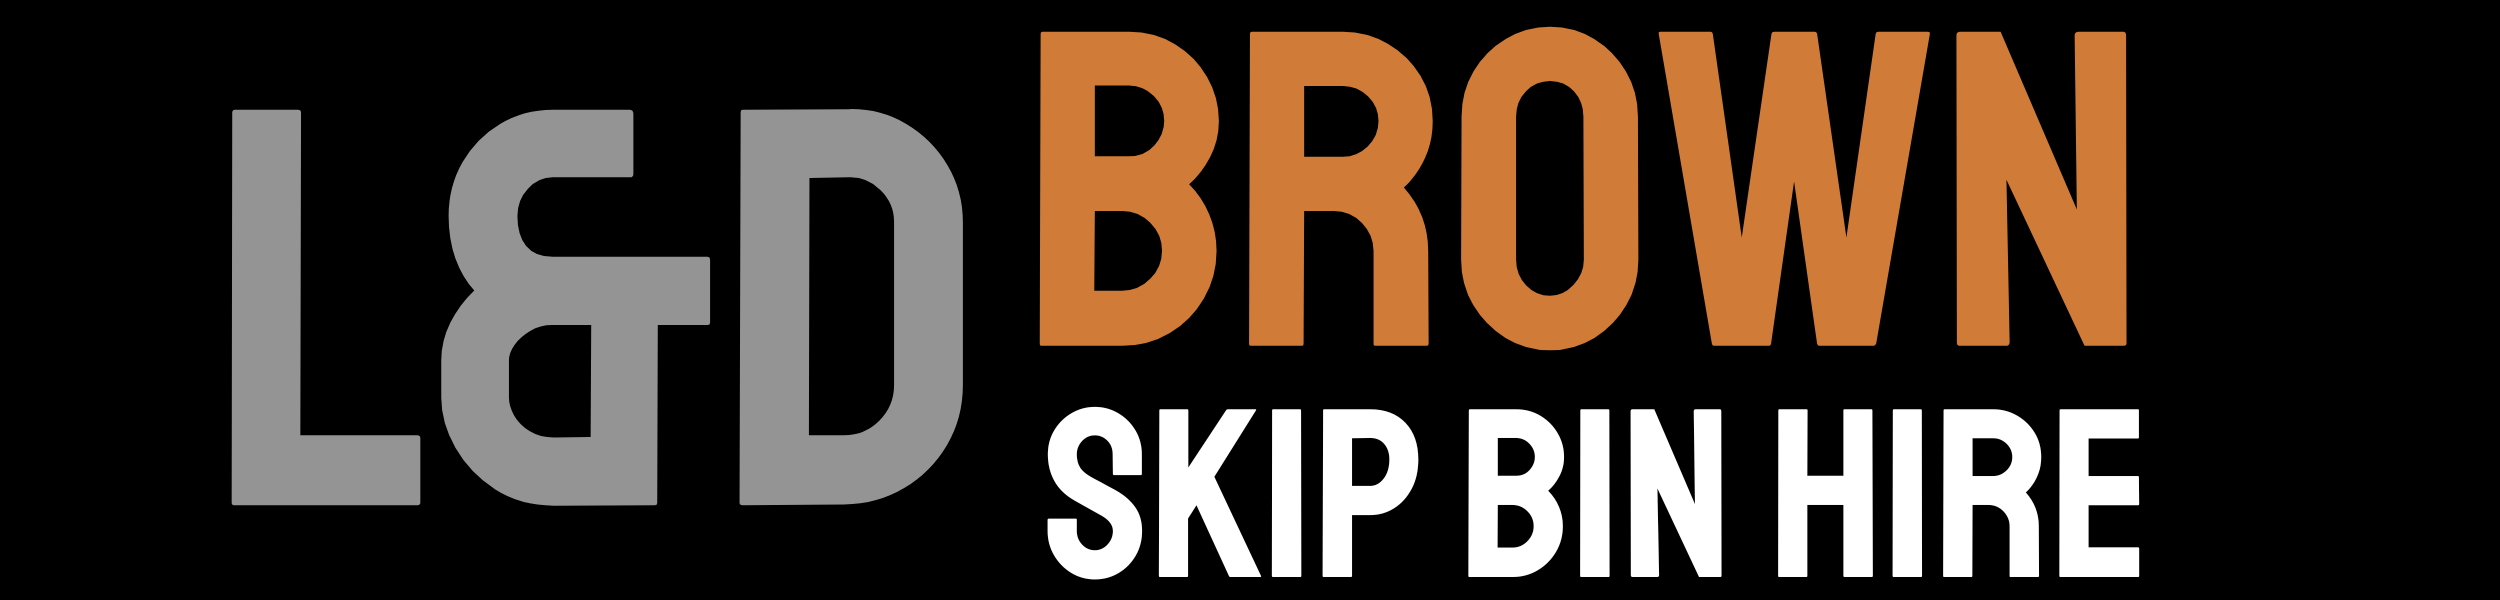 L&D Brown Skip Bin Hire